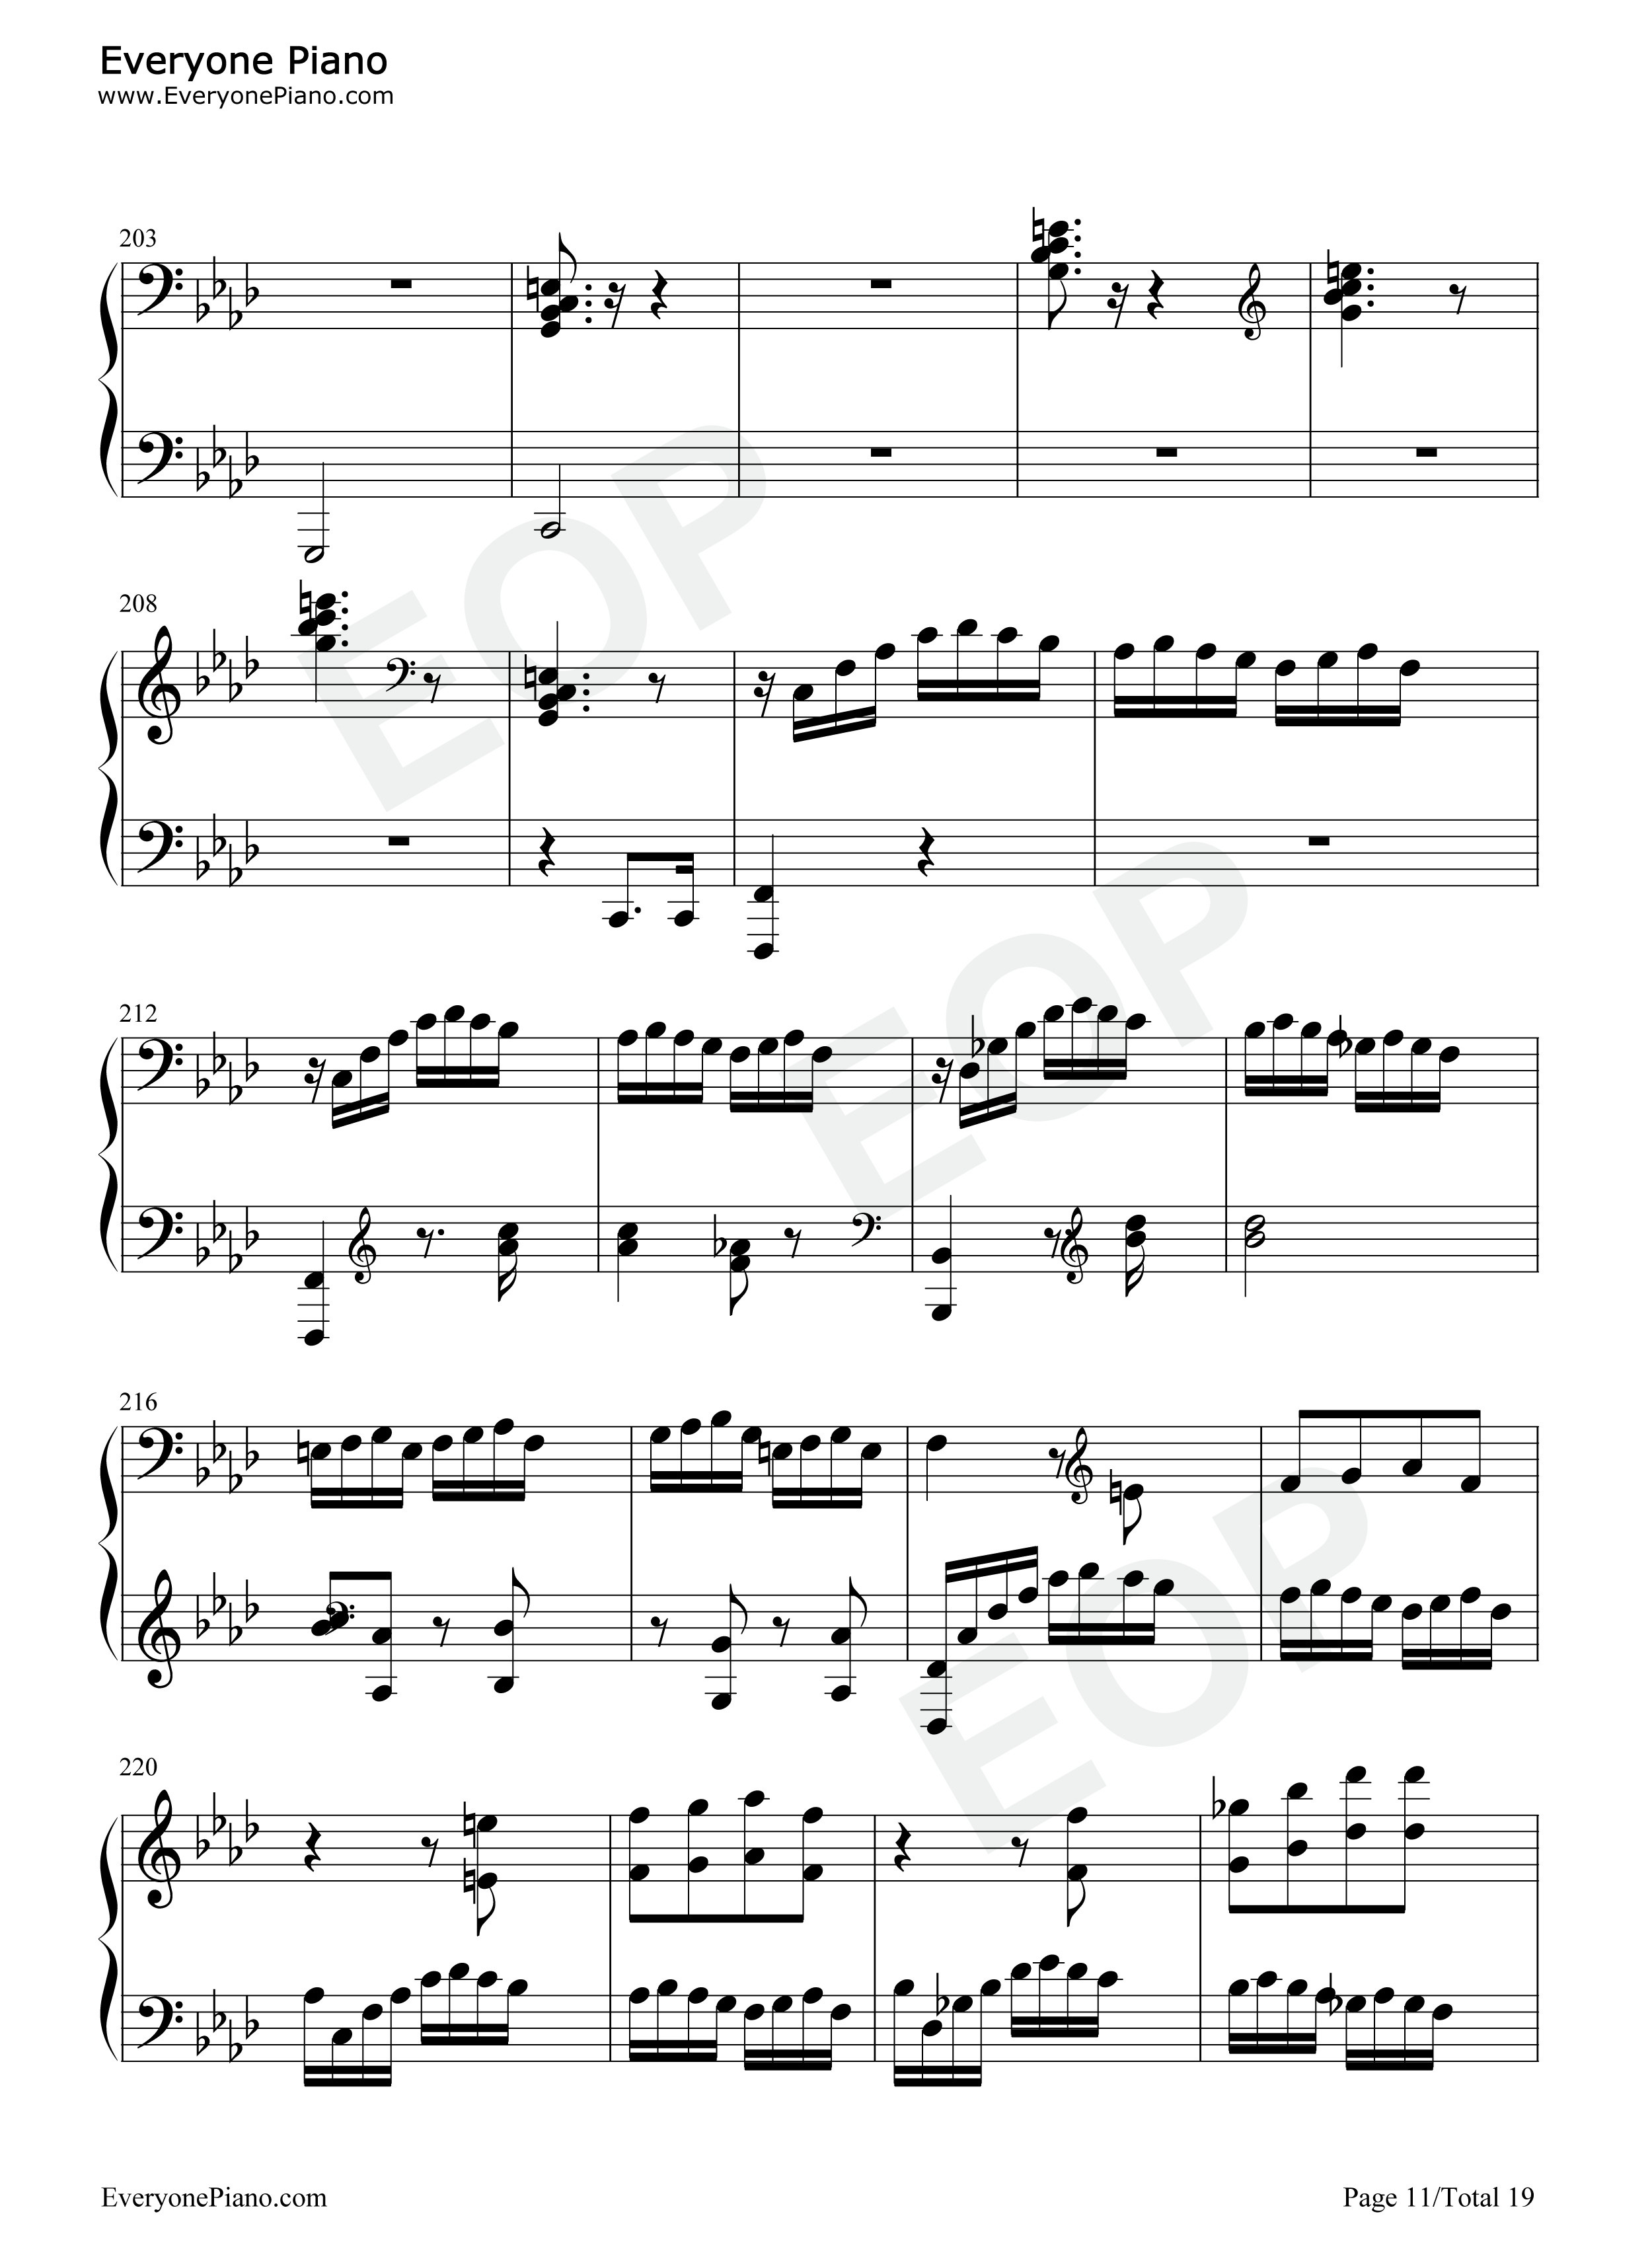 热情奏鸣曲第3乐章-第23钢琴奏鸣曲-贝多芬五线谱预览11